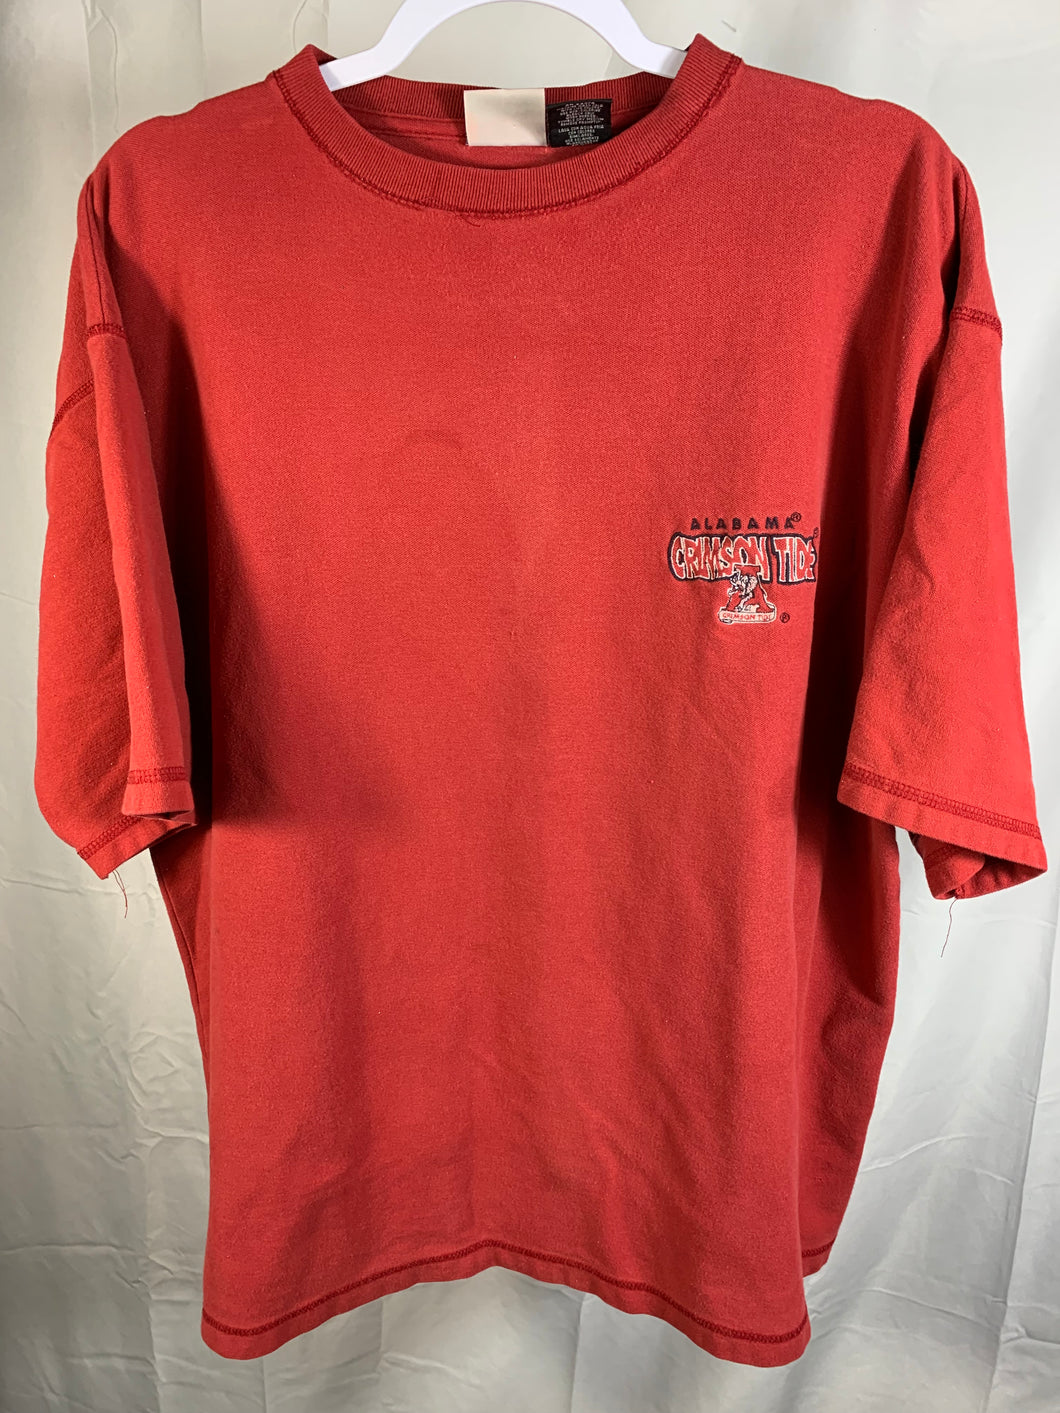 Vintage Alabama Crimson Tide T-Shirt Large